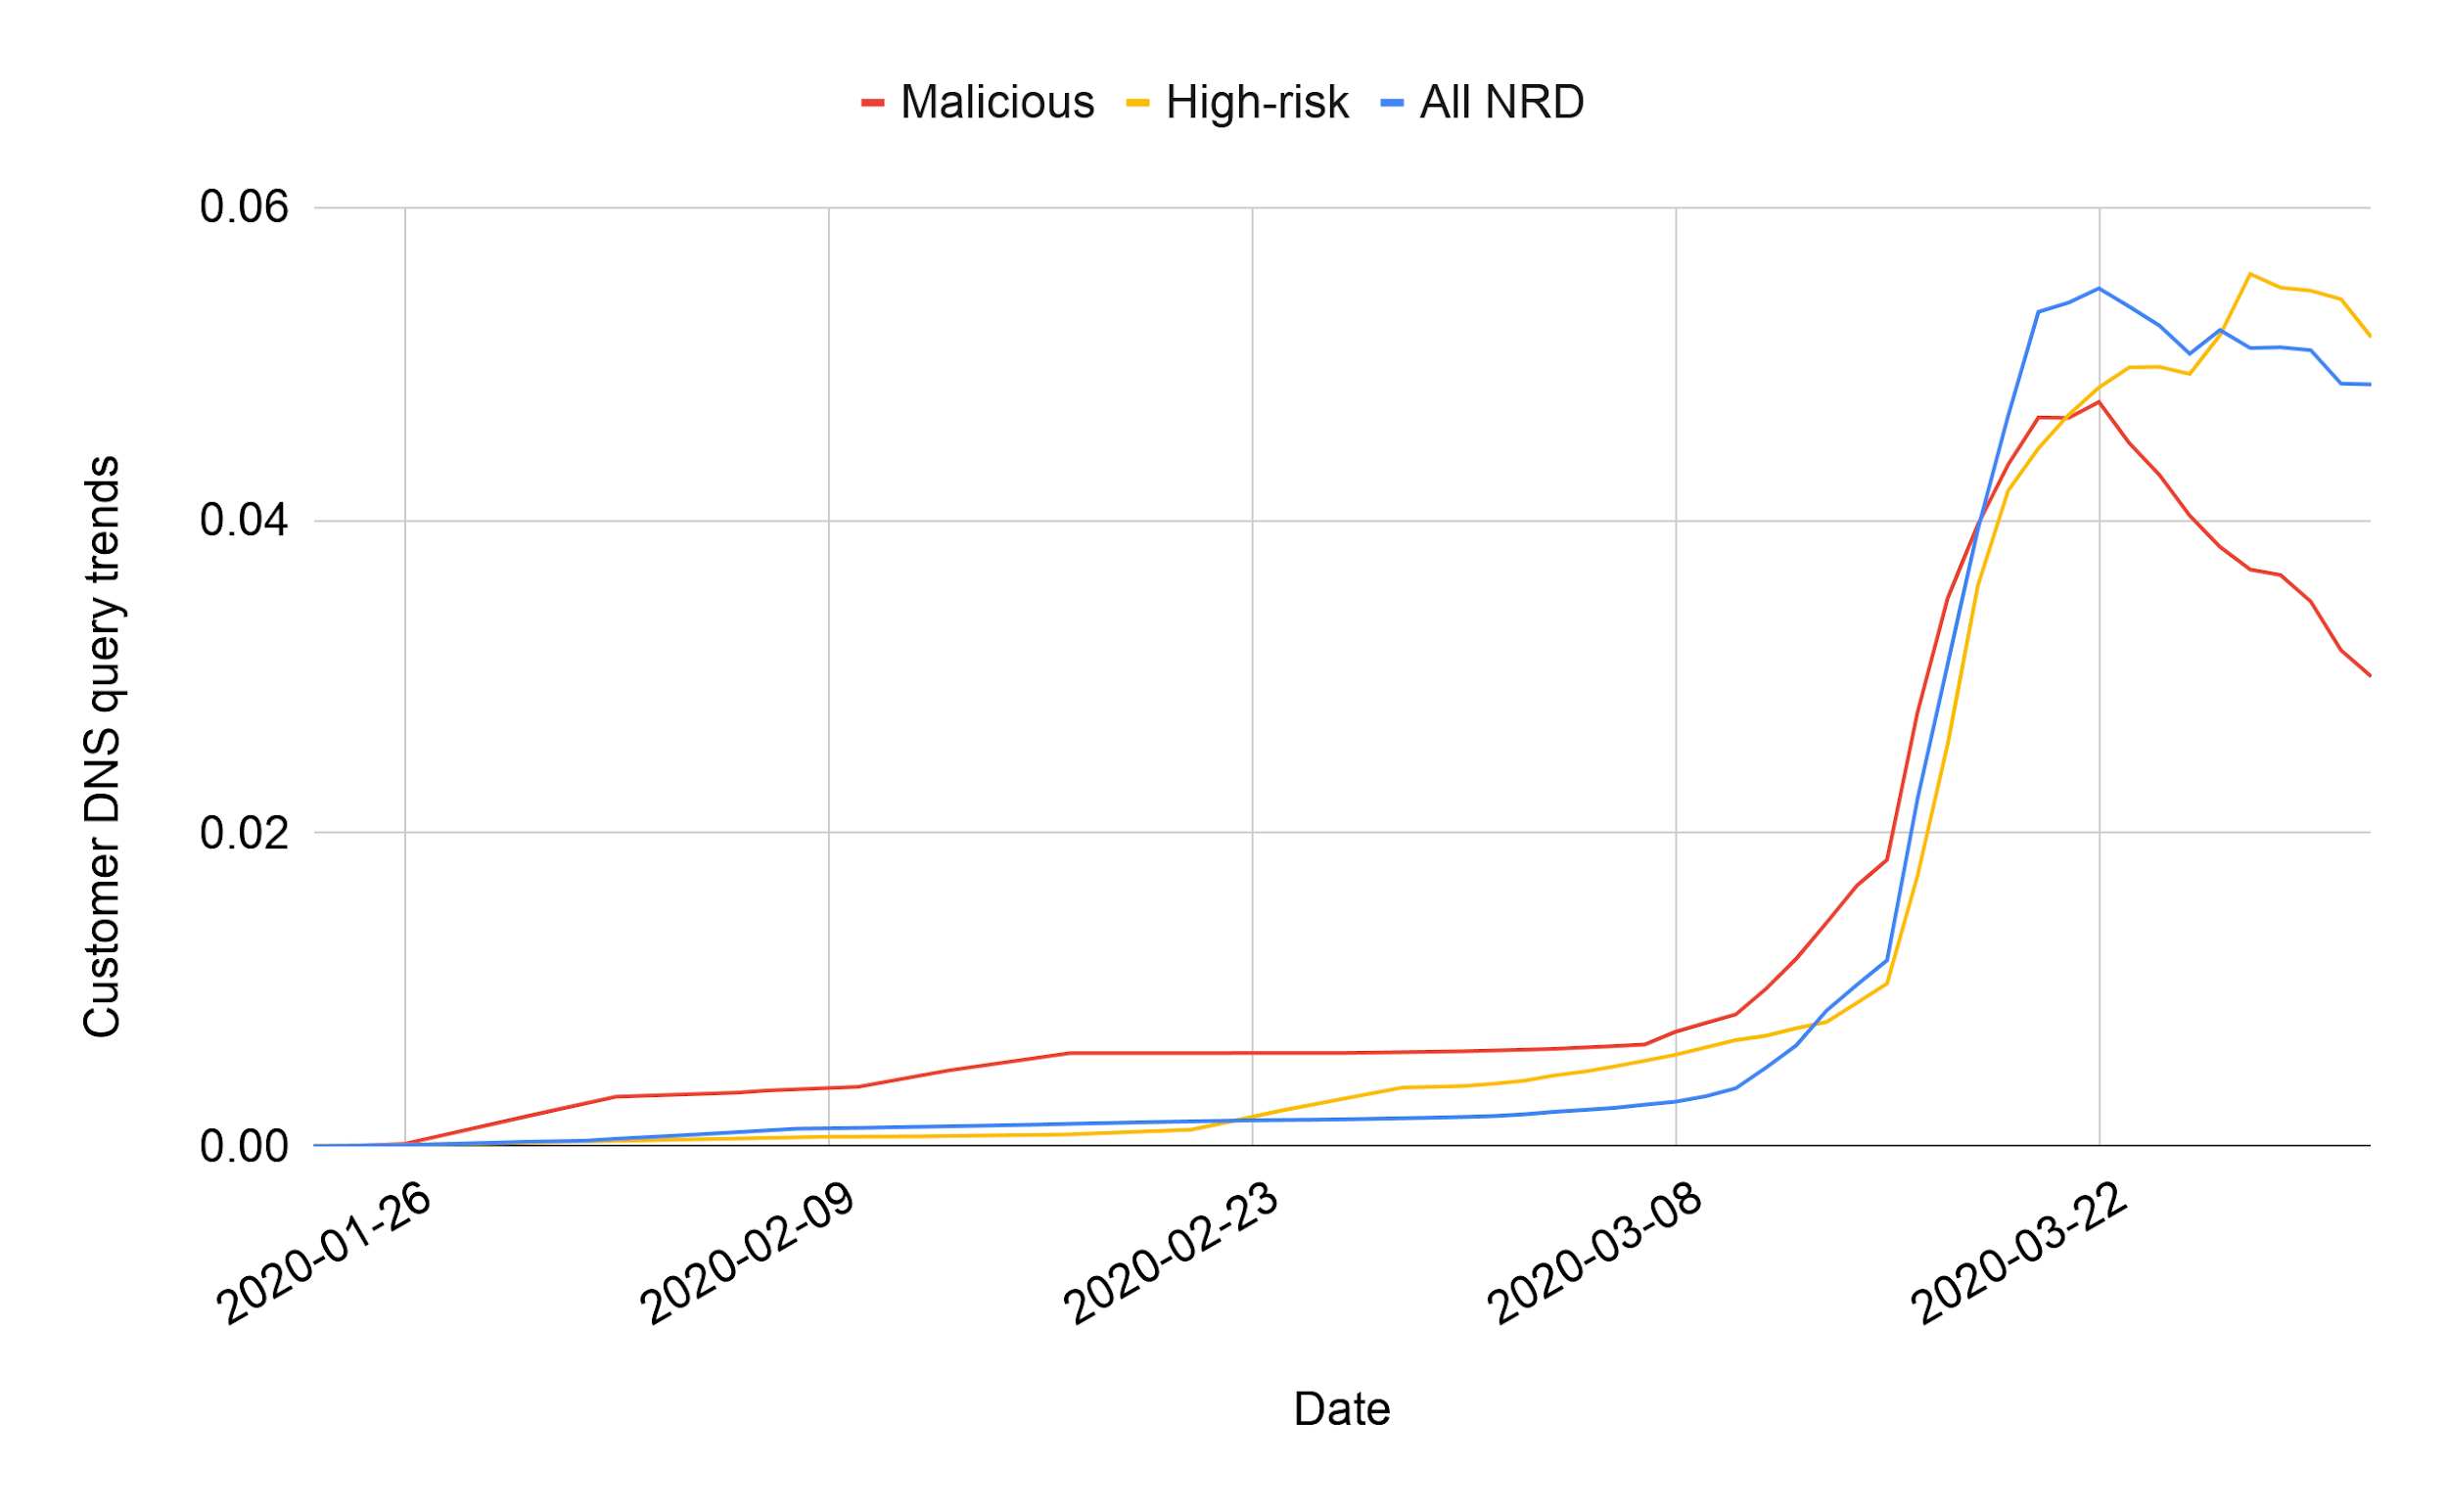 図4 弊社顧客ベースで見た⽇ごとのコロナウイルス関連DNSクエリ傾向（縦軸は弊社顧客ベースで観測された全DNSクエリを1(=100%)とした場合に各カテゴリのNRDへのDNSクエリが占める割合(0.01=1%))